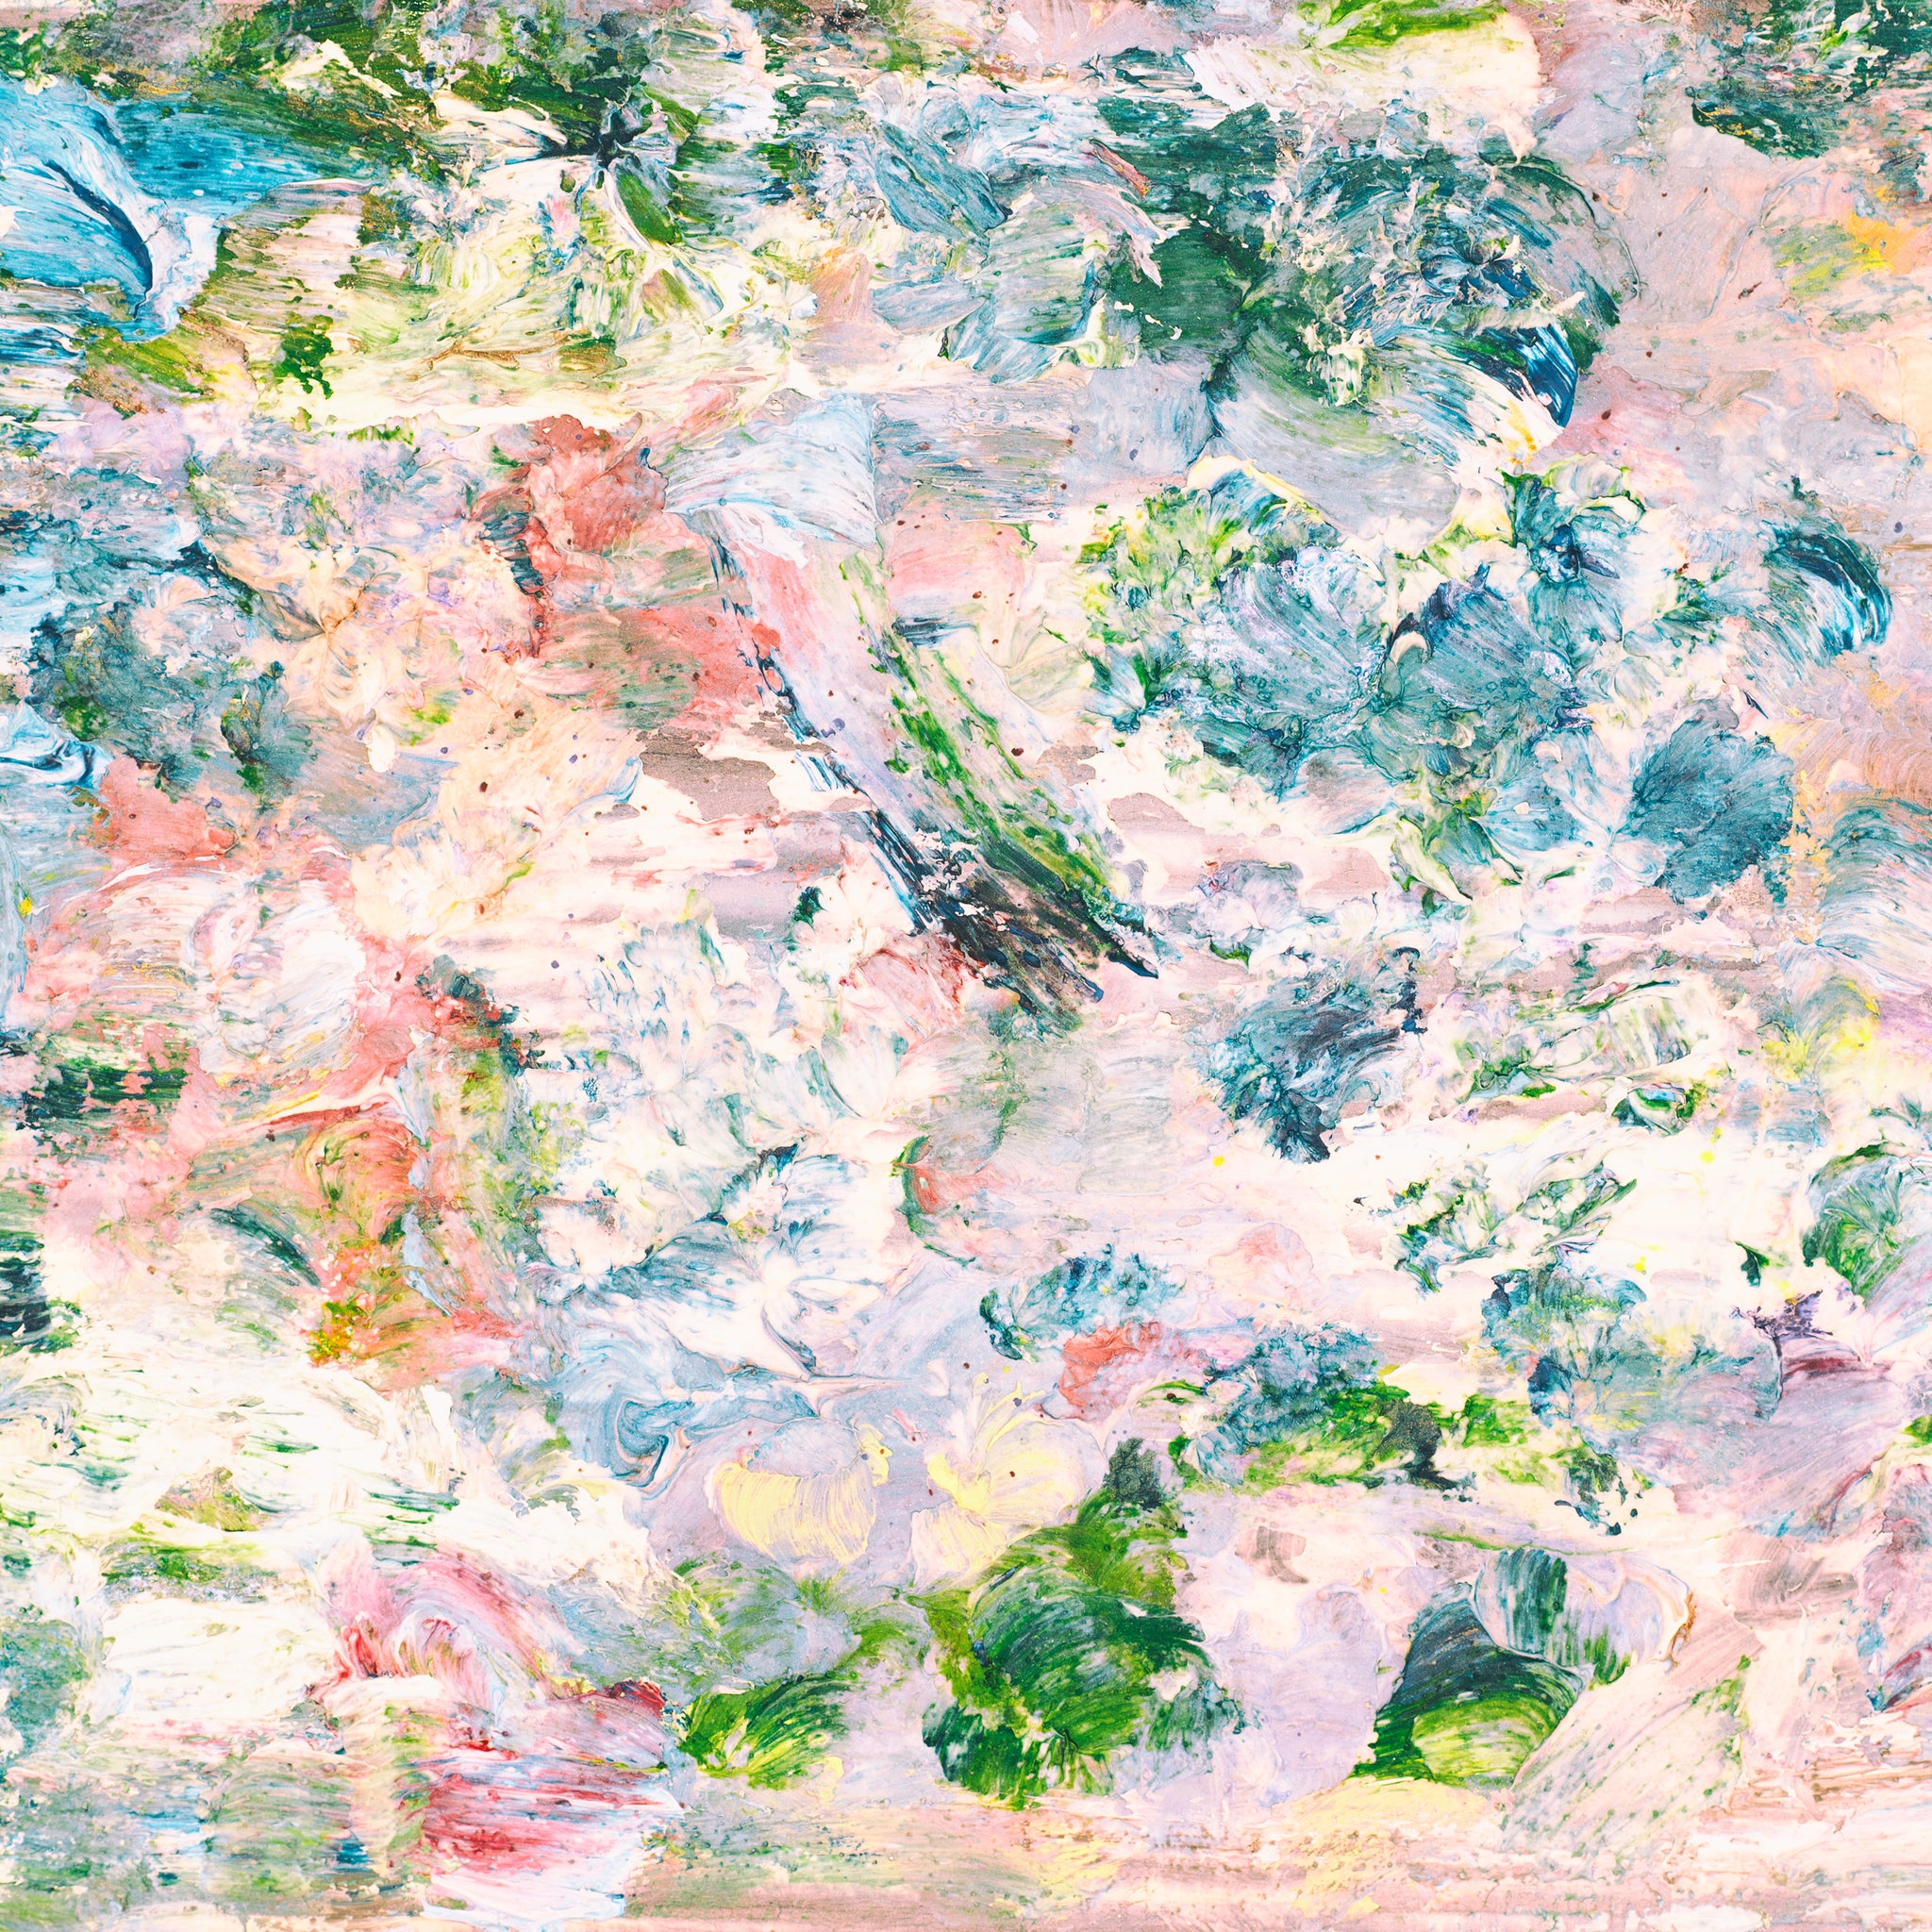 Paniyolo - Spring painting